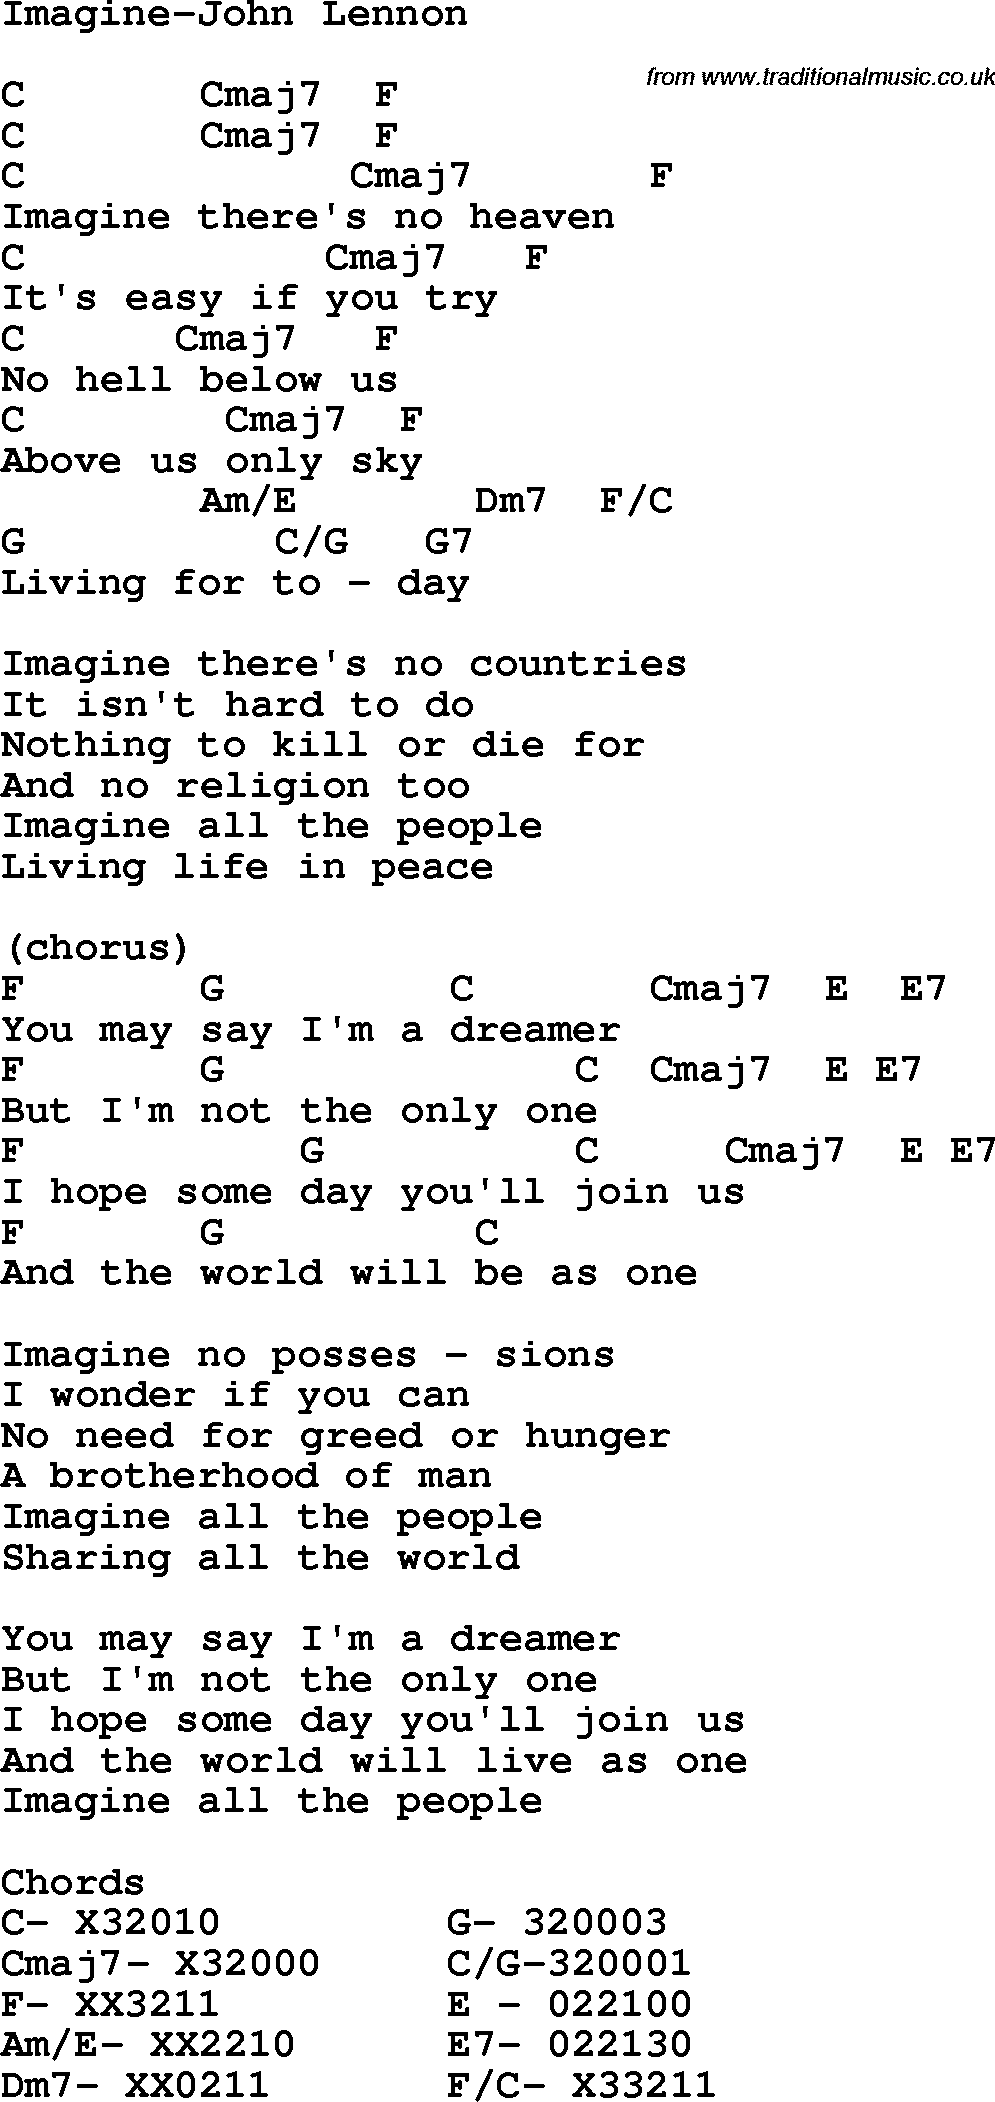 Protest Song Imagine-John Lennon lyrics and chords